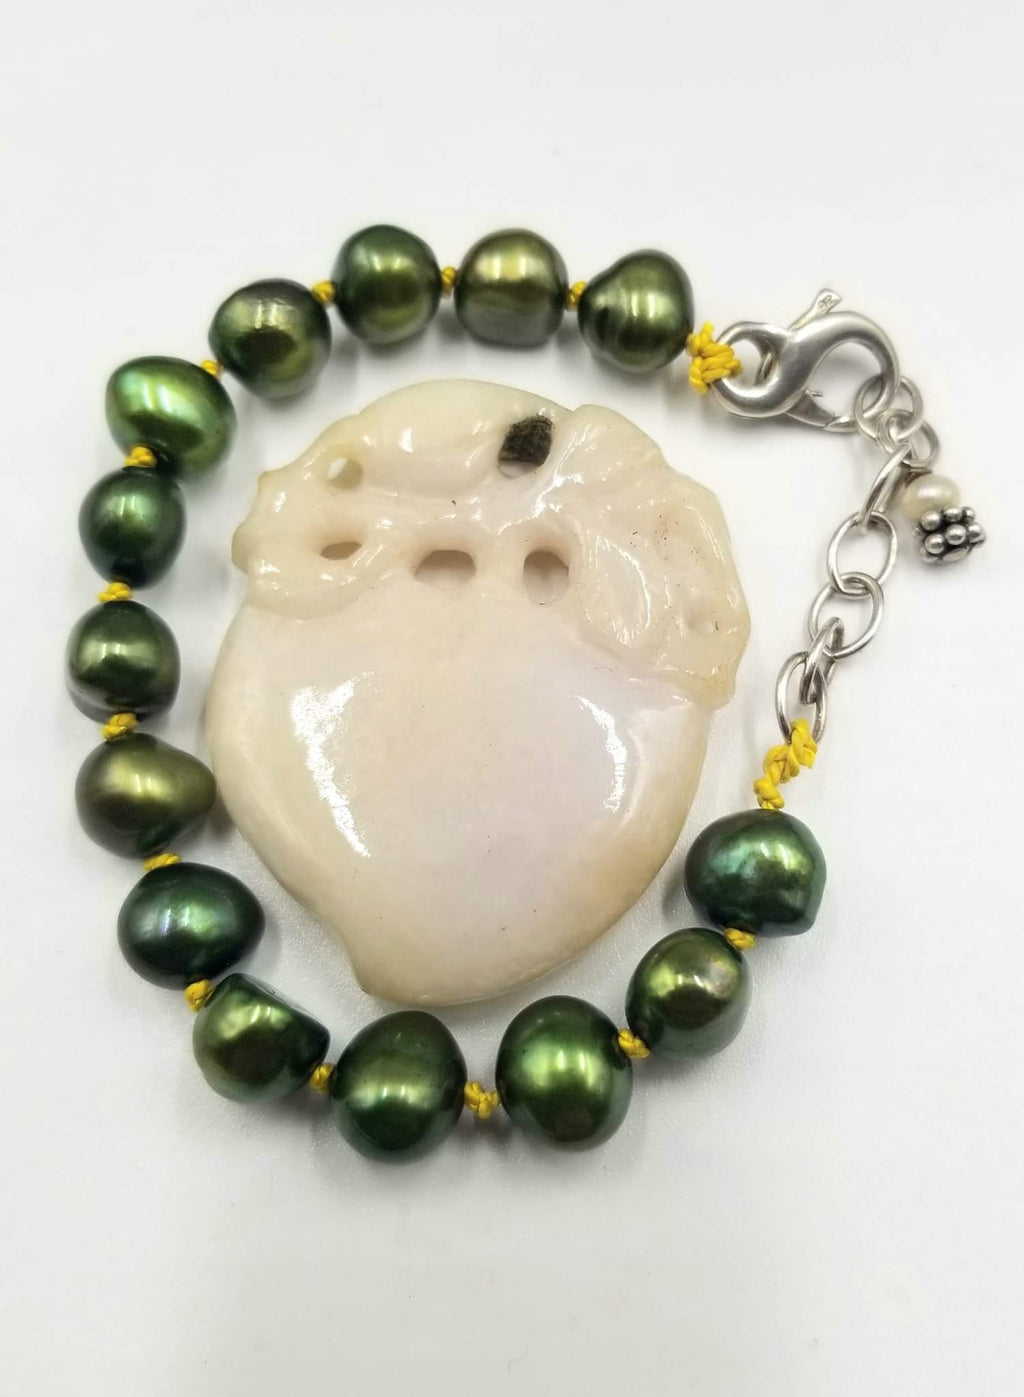 Adjustable sterling silver bracelet, green pearls on golden silk. 5" - 6.75" Length.